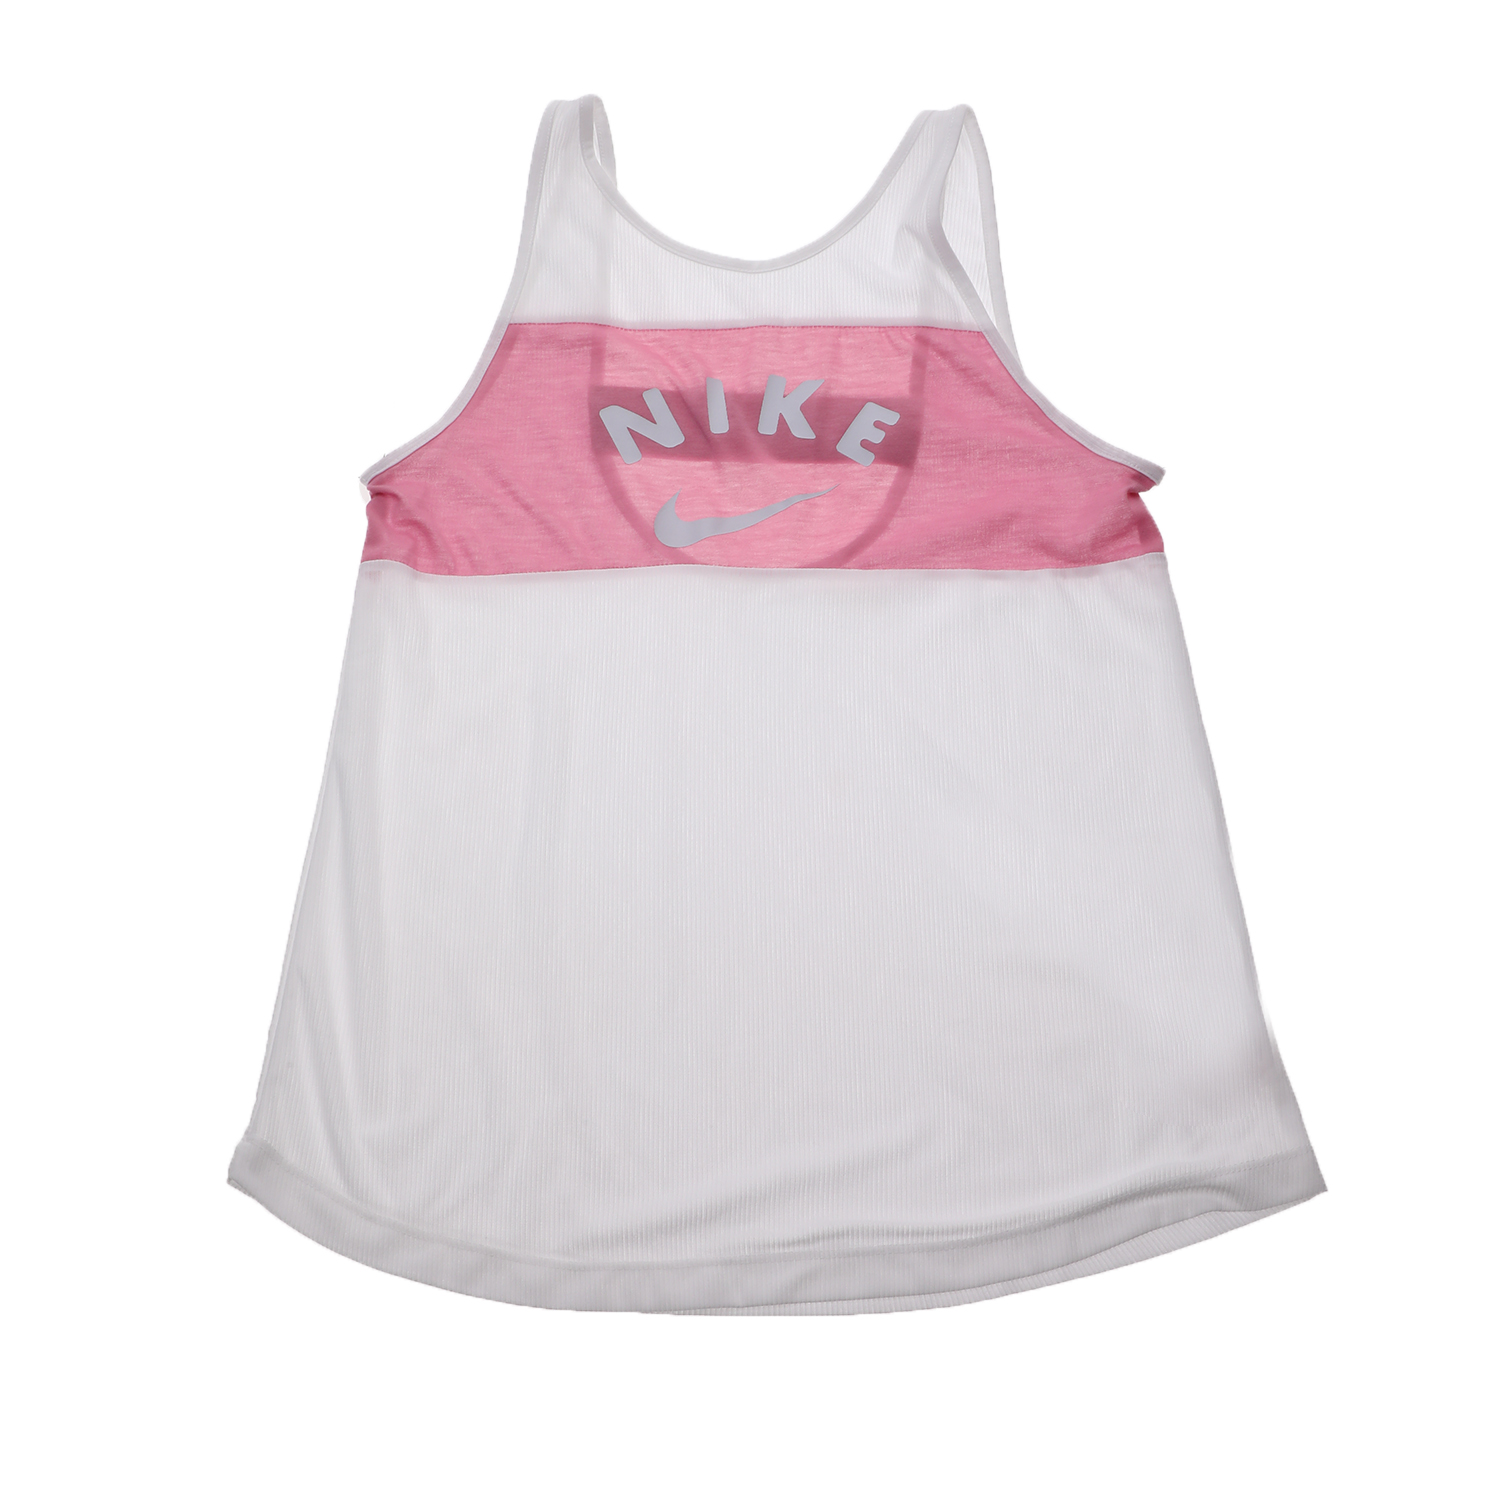 Παιδικά/Girls/Ρούχα/Αθλητικά NIKE - Παιδική αμάνικη μπλούζα NIKE TANK FB λευκή - ροζ